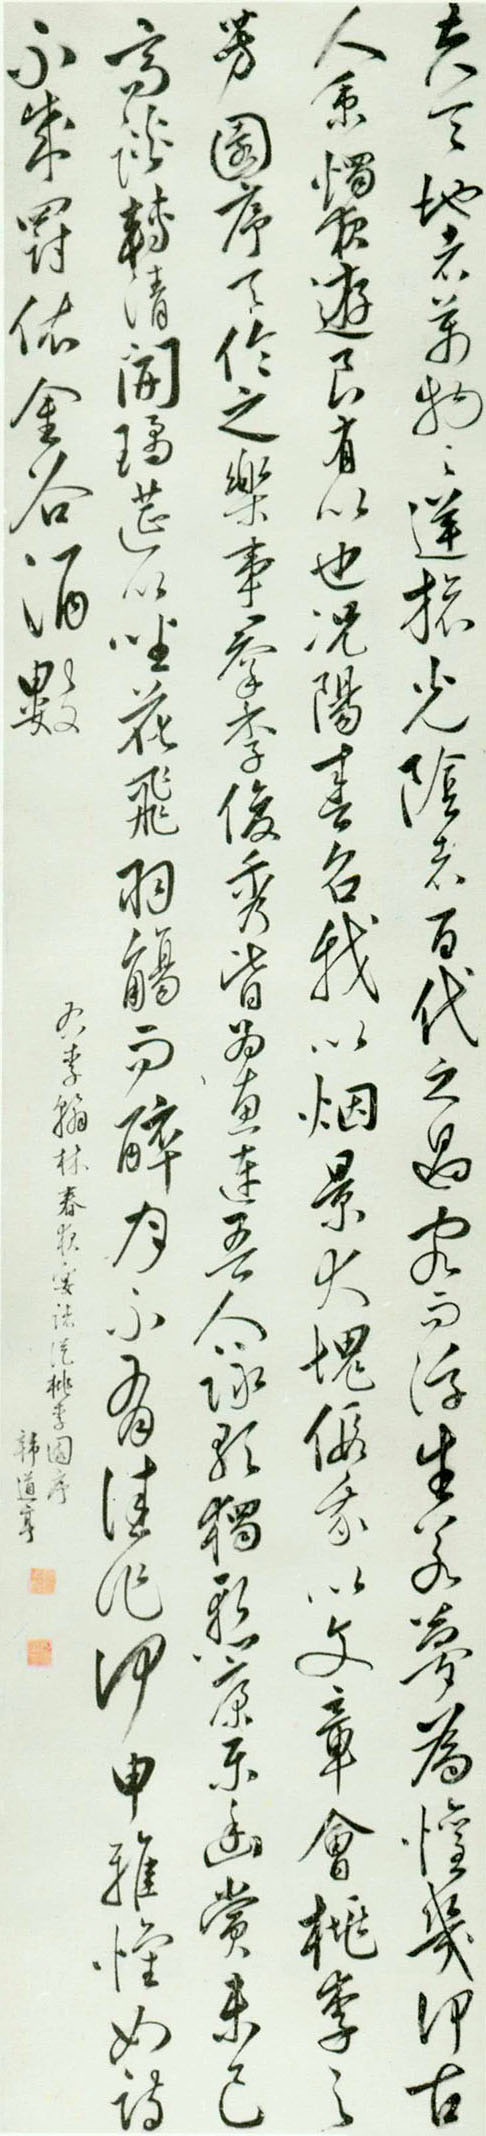 韩道亨 《草书李白文轴》-苏州博物馆藏(图1)